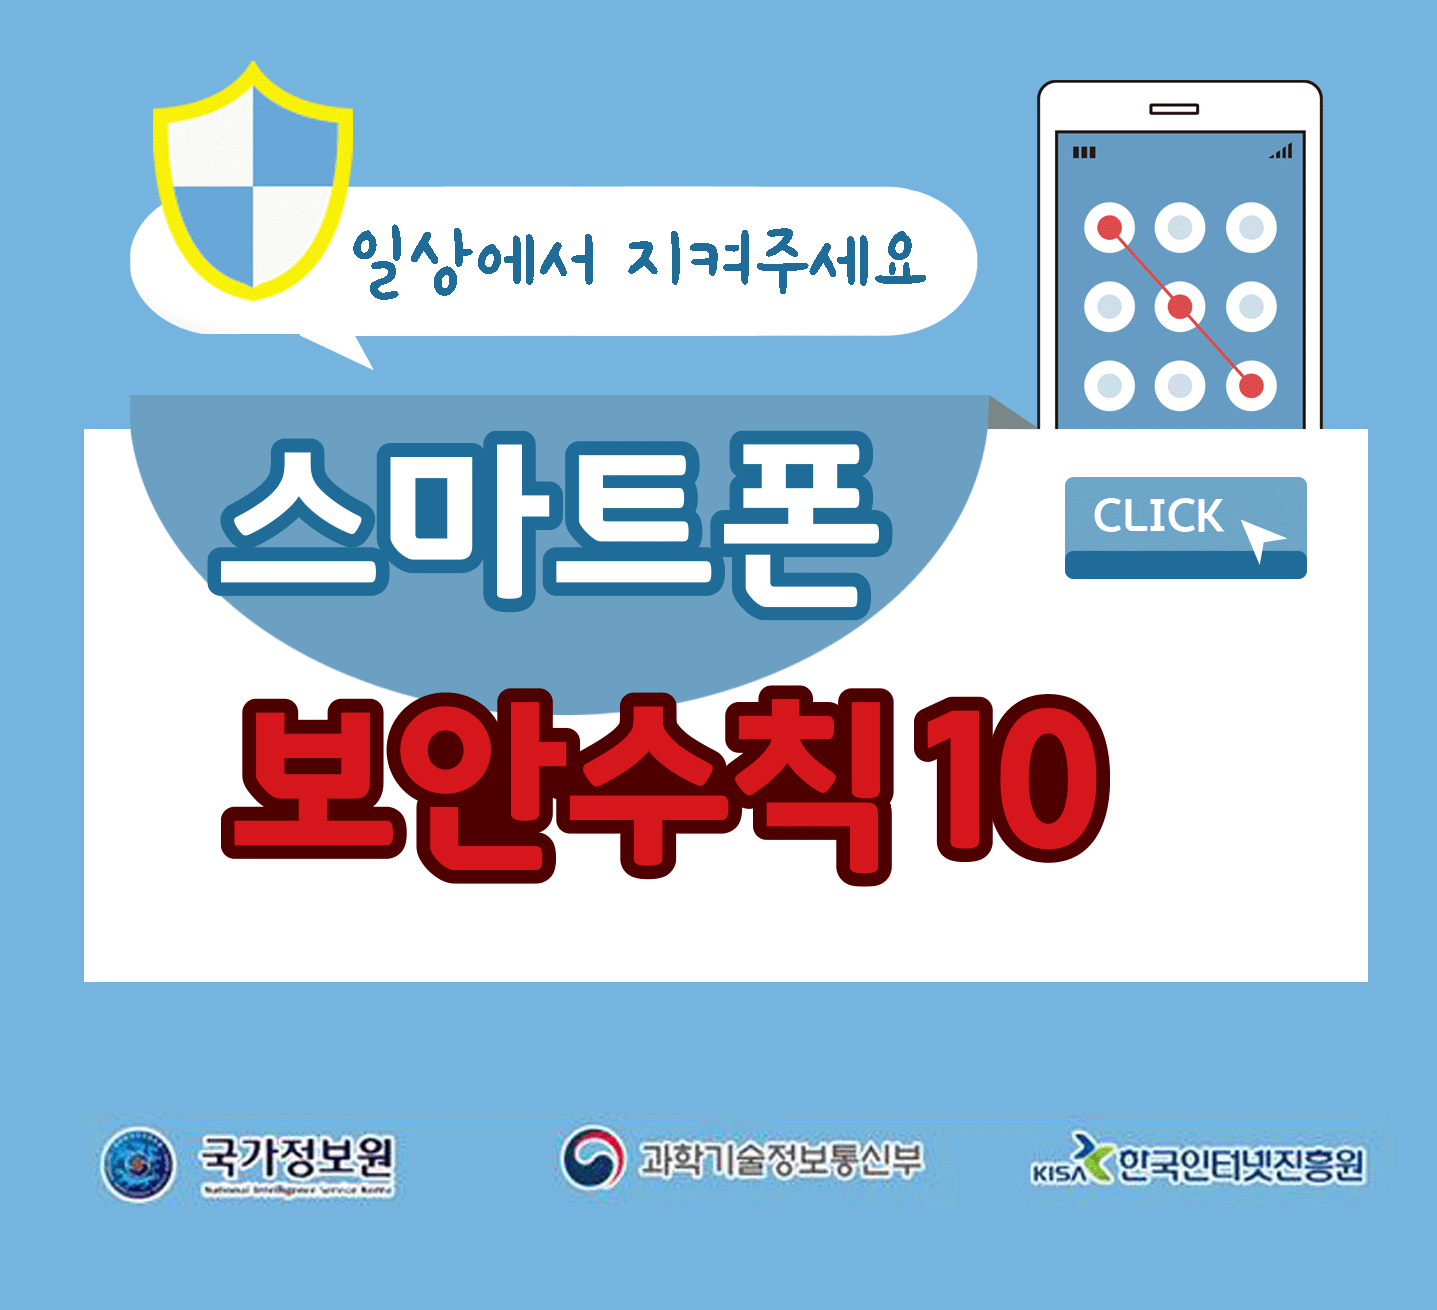 일상에서 지켜주세요
스마트폰 보안수칙 10 CLICK
국가정보원, 과학기술정보통신부, 한국인터넷진흥원;jsessionid=4D126523C8B16A869E1EE7490A7378F4